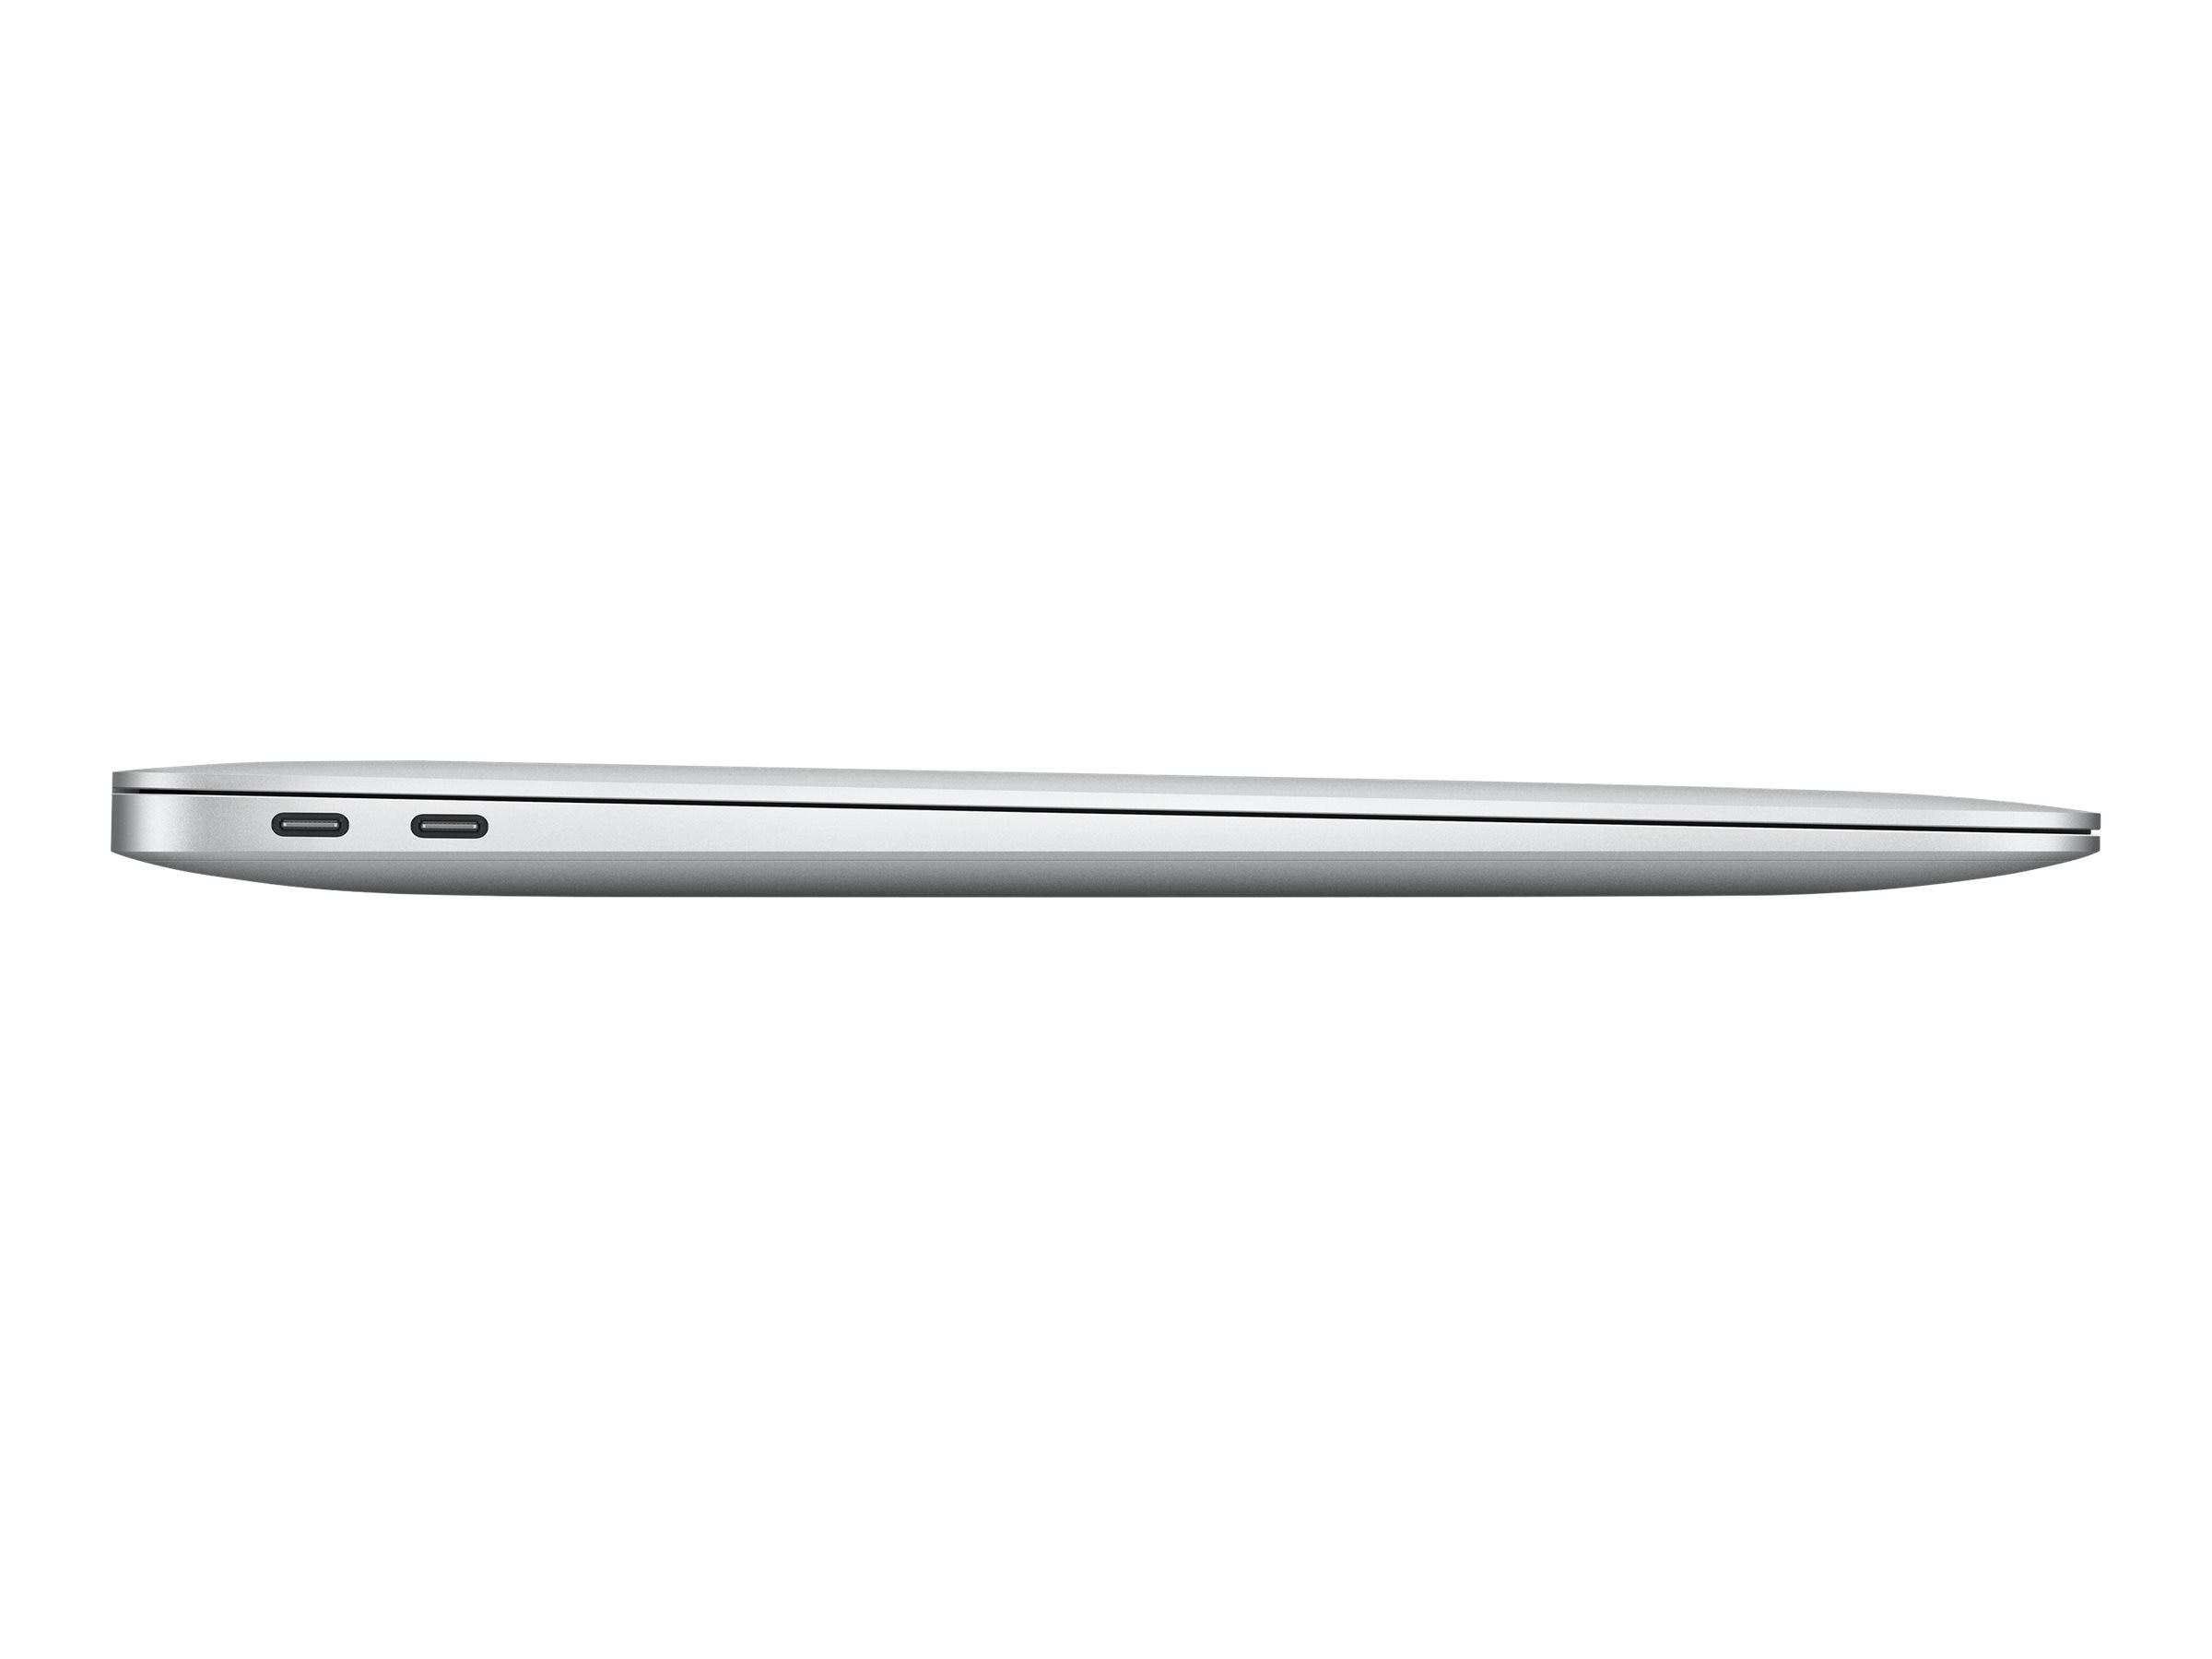 MGN93LL/A - Apple MacBook Air 13